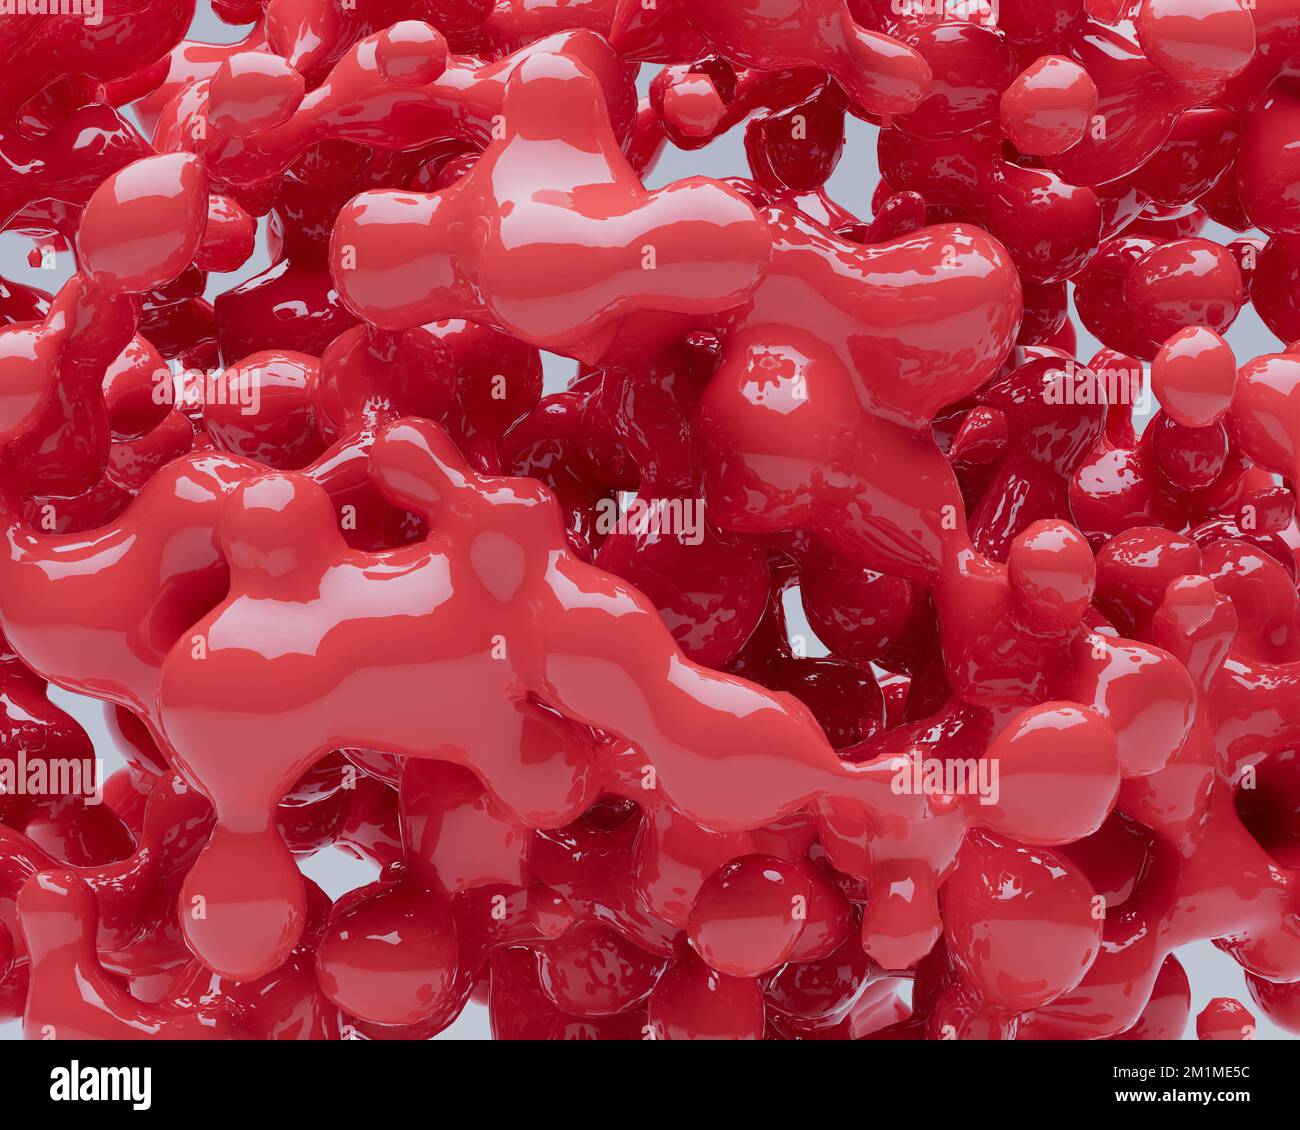 Une boule rouge brillante abstraite composée d'un matériau brillant rouge poreux sur un arrière-plan isolé - rendu 3D Banque D'Images